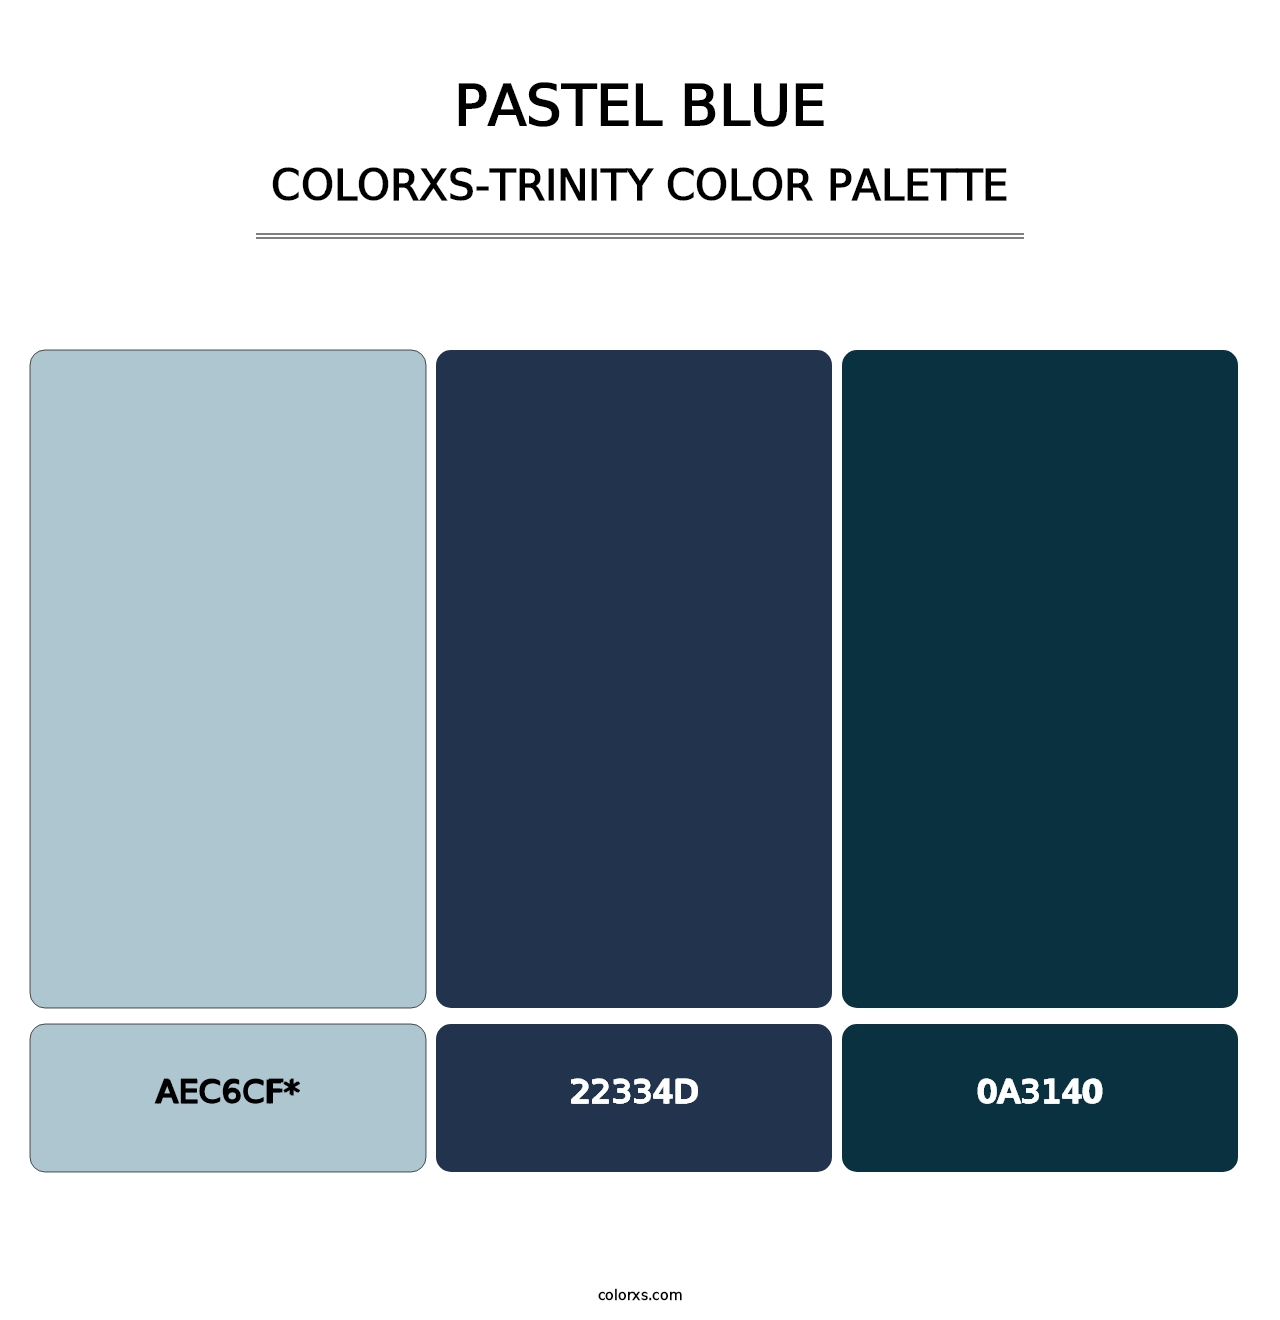 Pastel Blue - Colorxs Trinity Palette